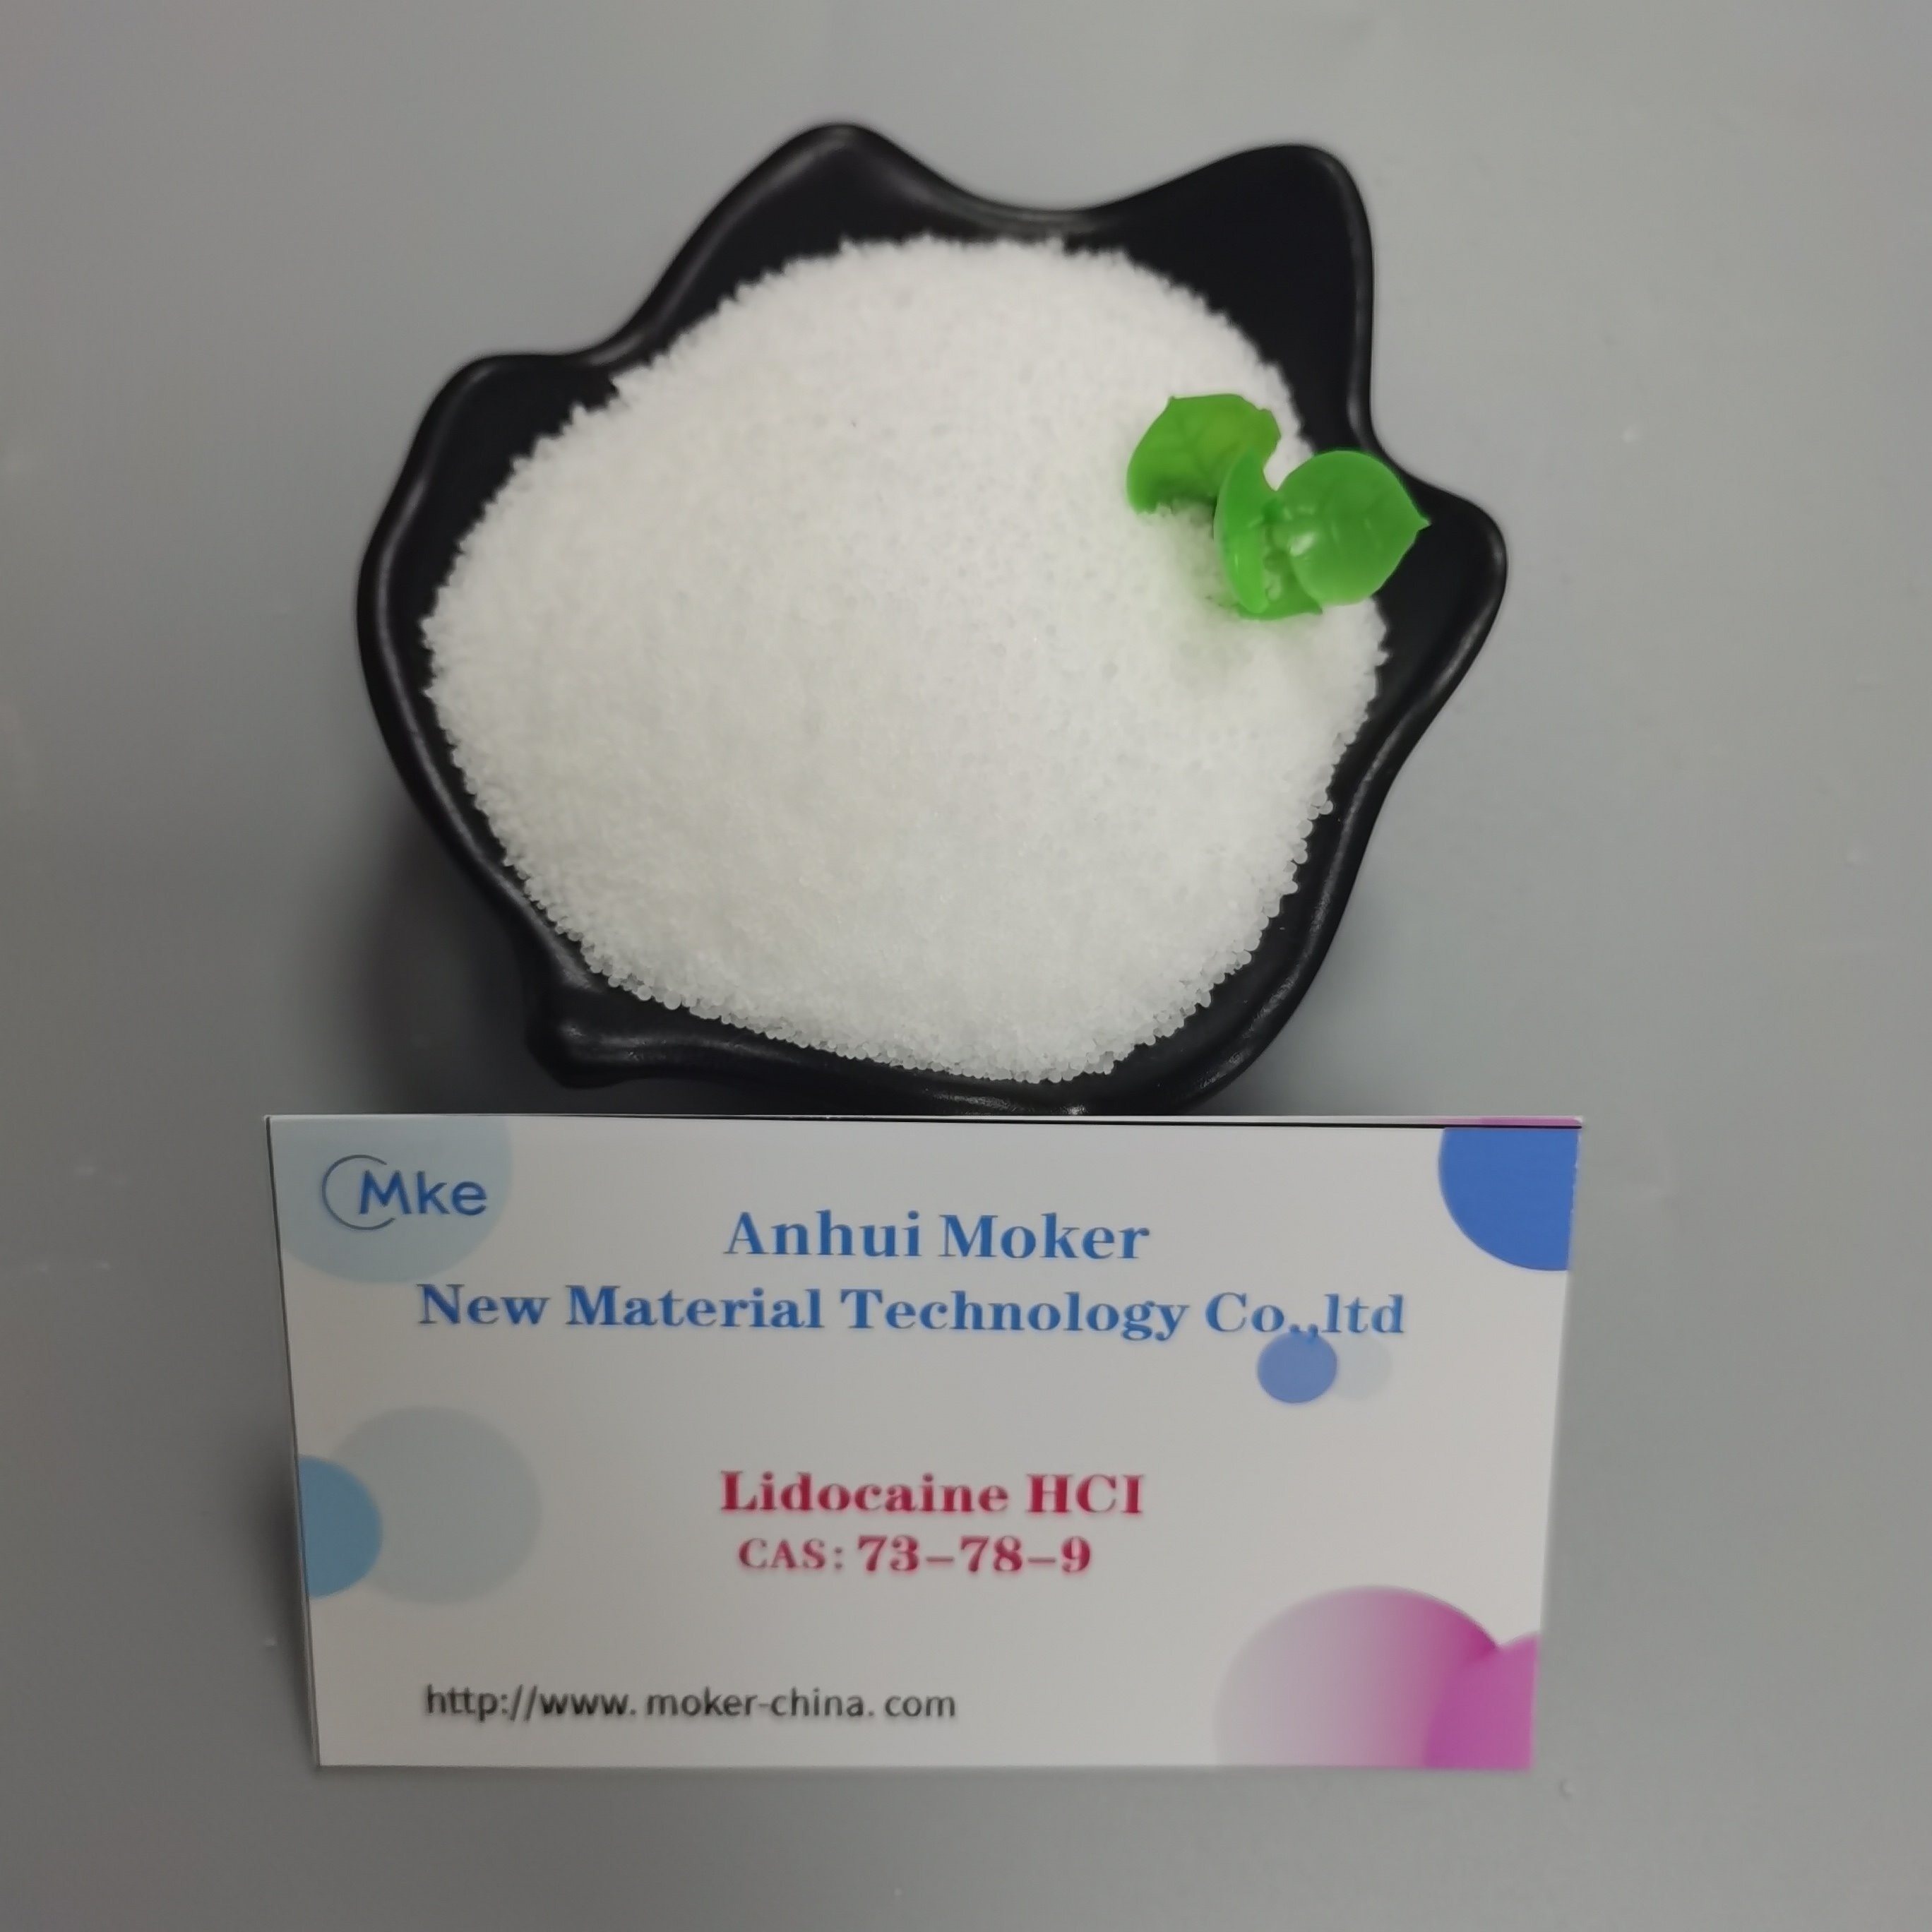 Hohe Qualität Lidocain HCl CAS 73-78-9 / CAS 137-58-6 Lidocain